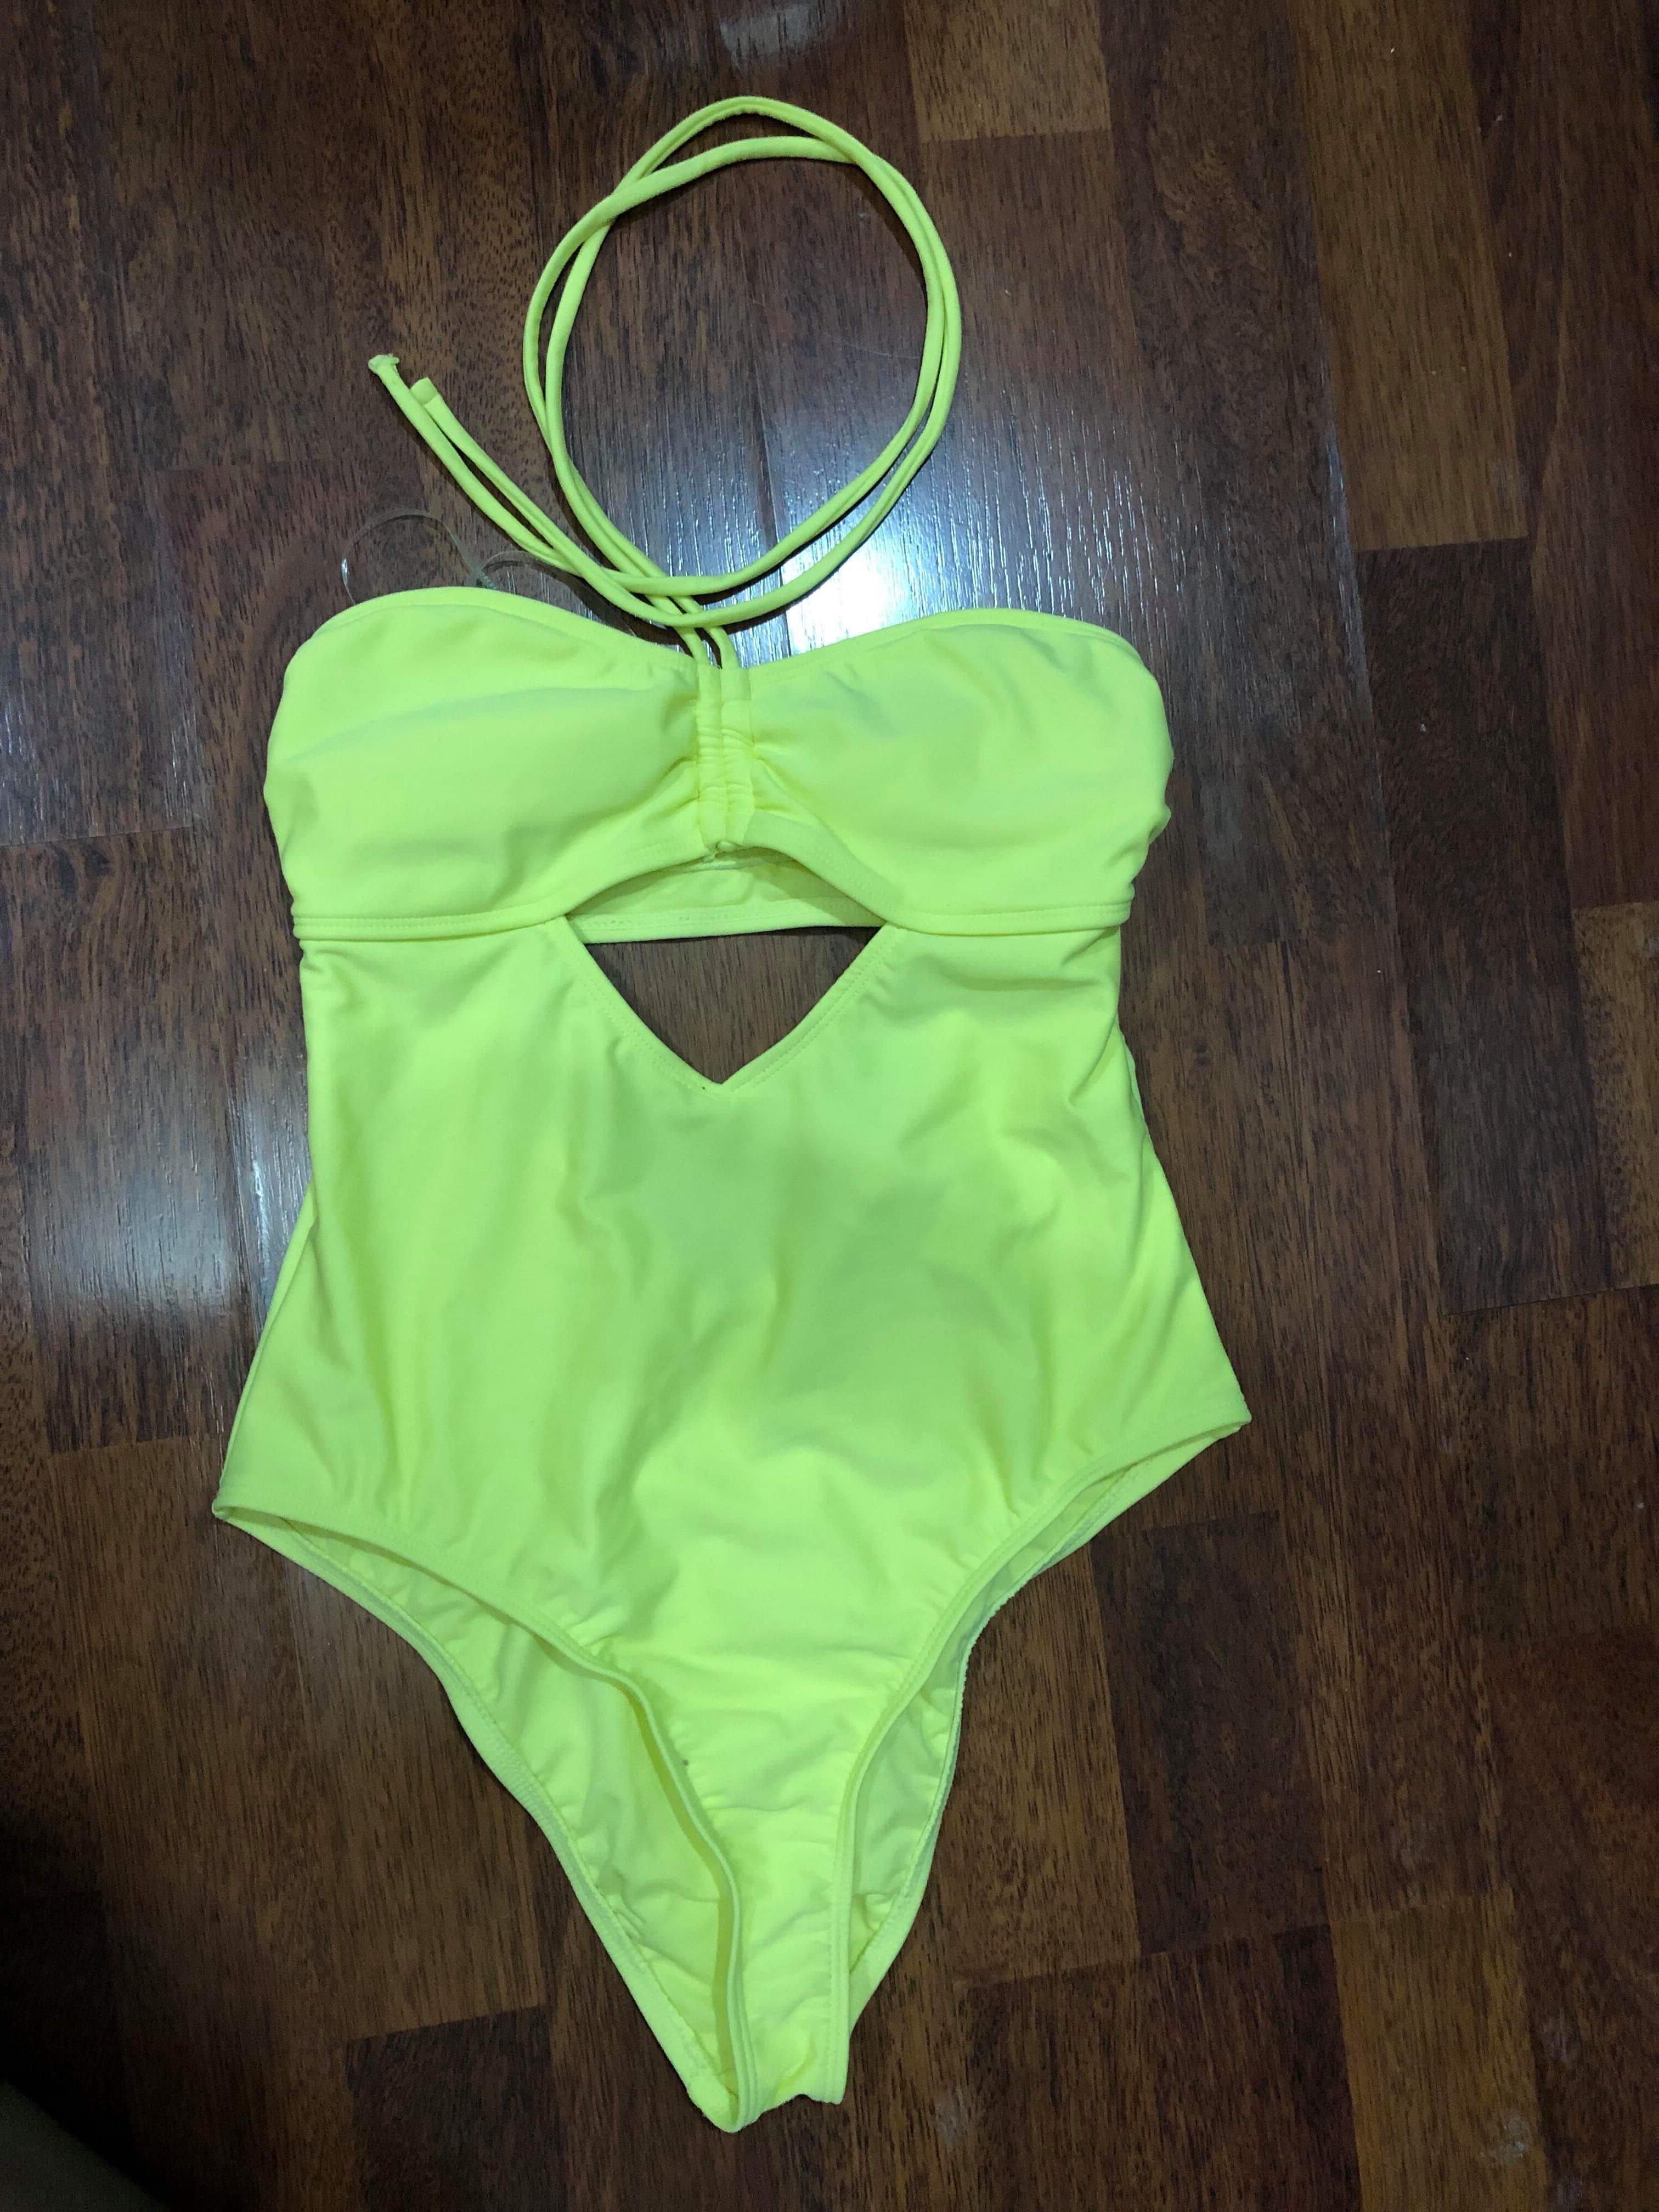 Neon Yellow One-Piece, High-Cut Bikini, Women's Fashion, Coats, Jackets ...